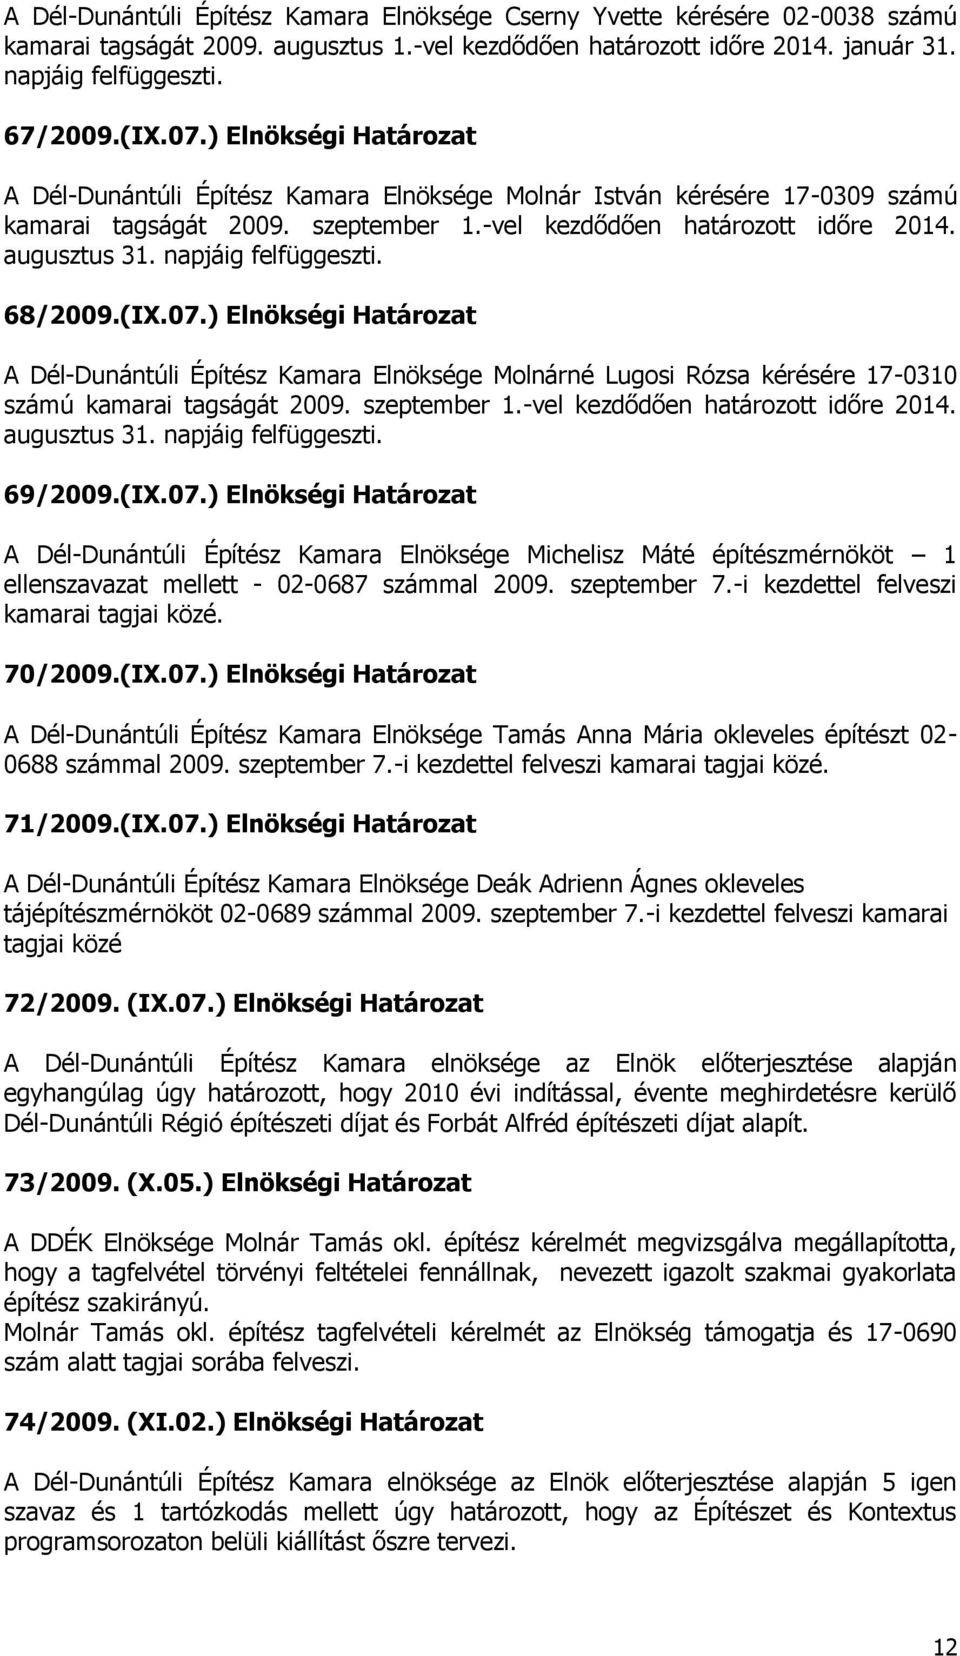 napjáig felfüggeszti. 68/2009.(IX.07.) Elnökségi Határozat A Dél-Dunántúli Építész Kamara Elnöksége Molnárné Lugosi Rózsa kérésére 17-0310 számú kamarai tagságát 2009. szeptember 1.